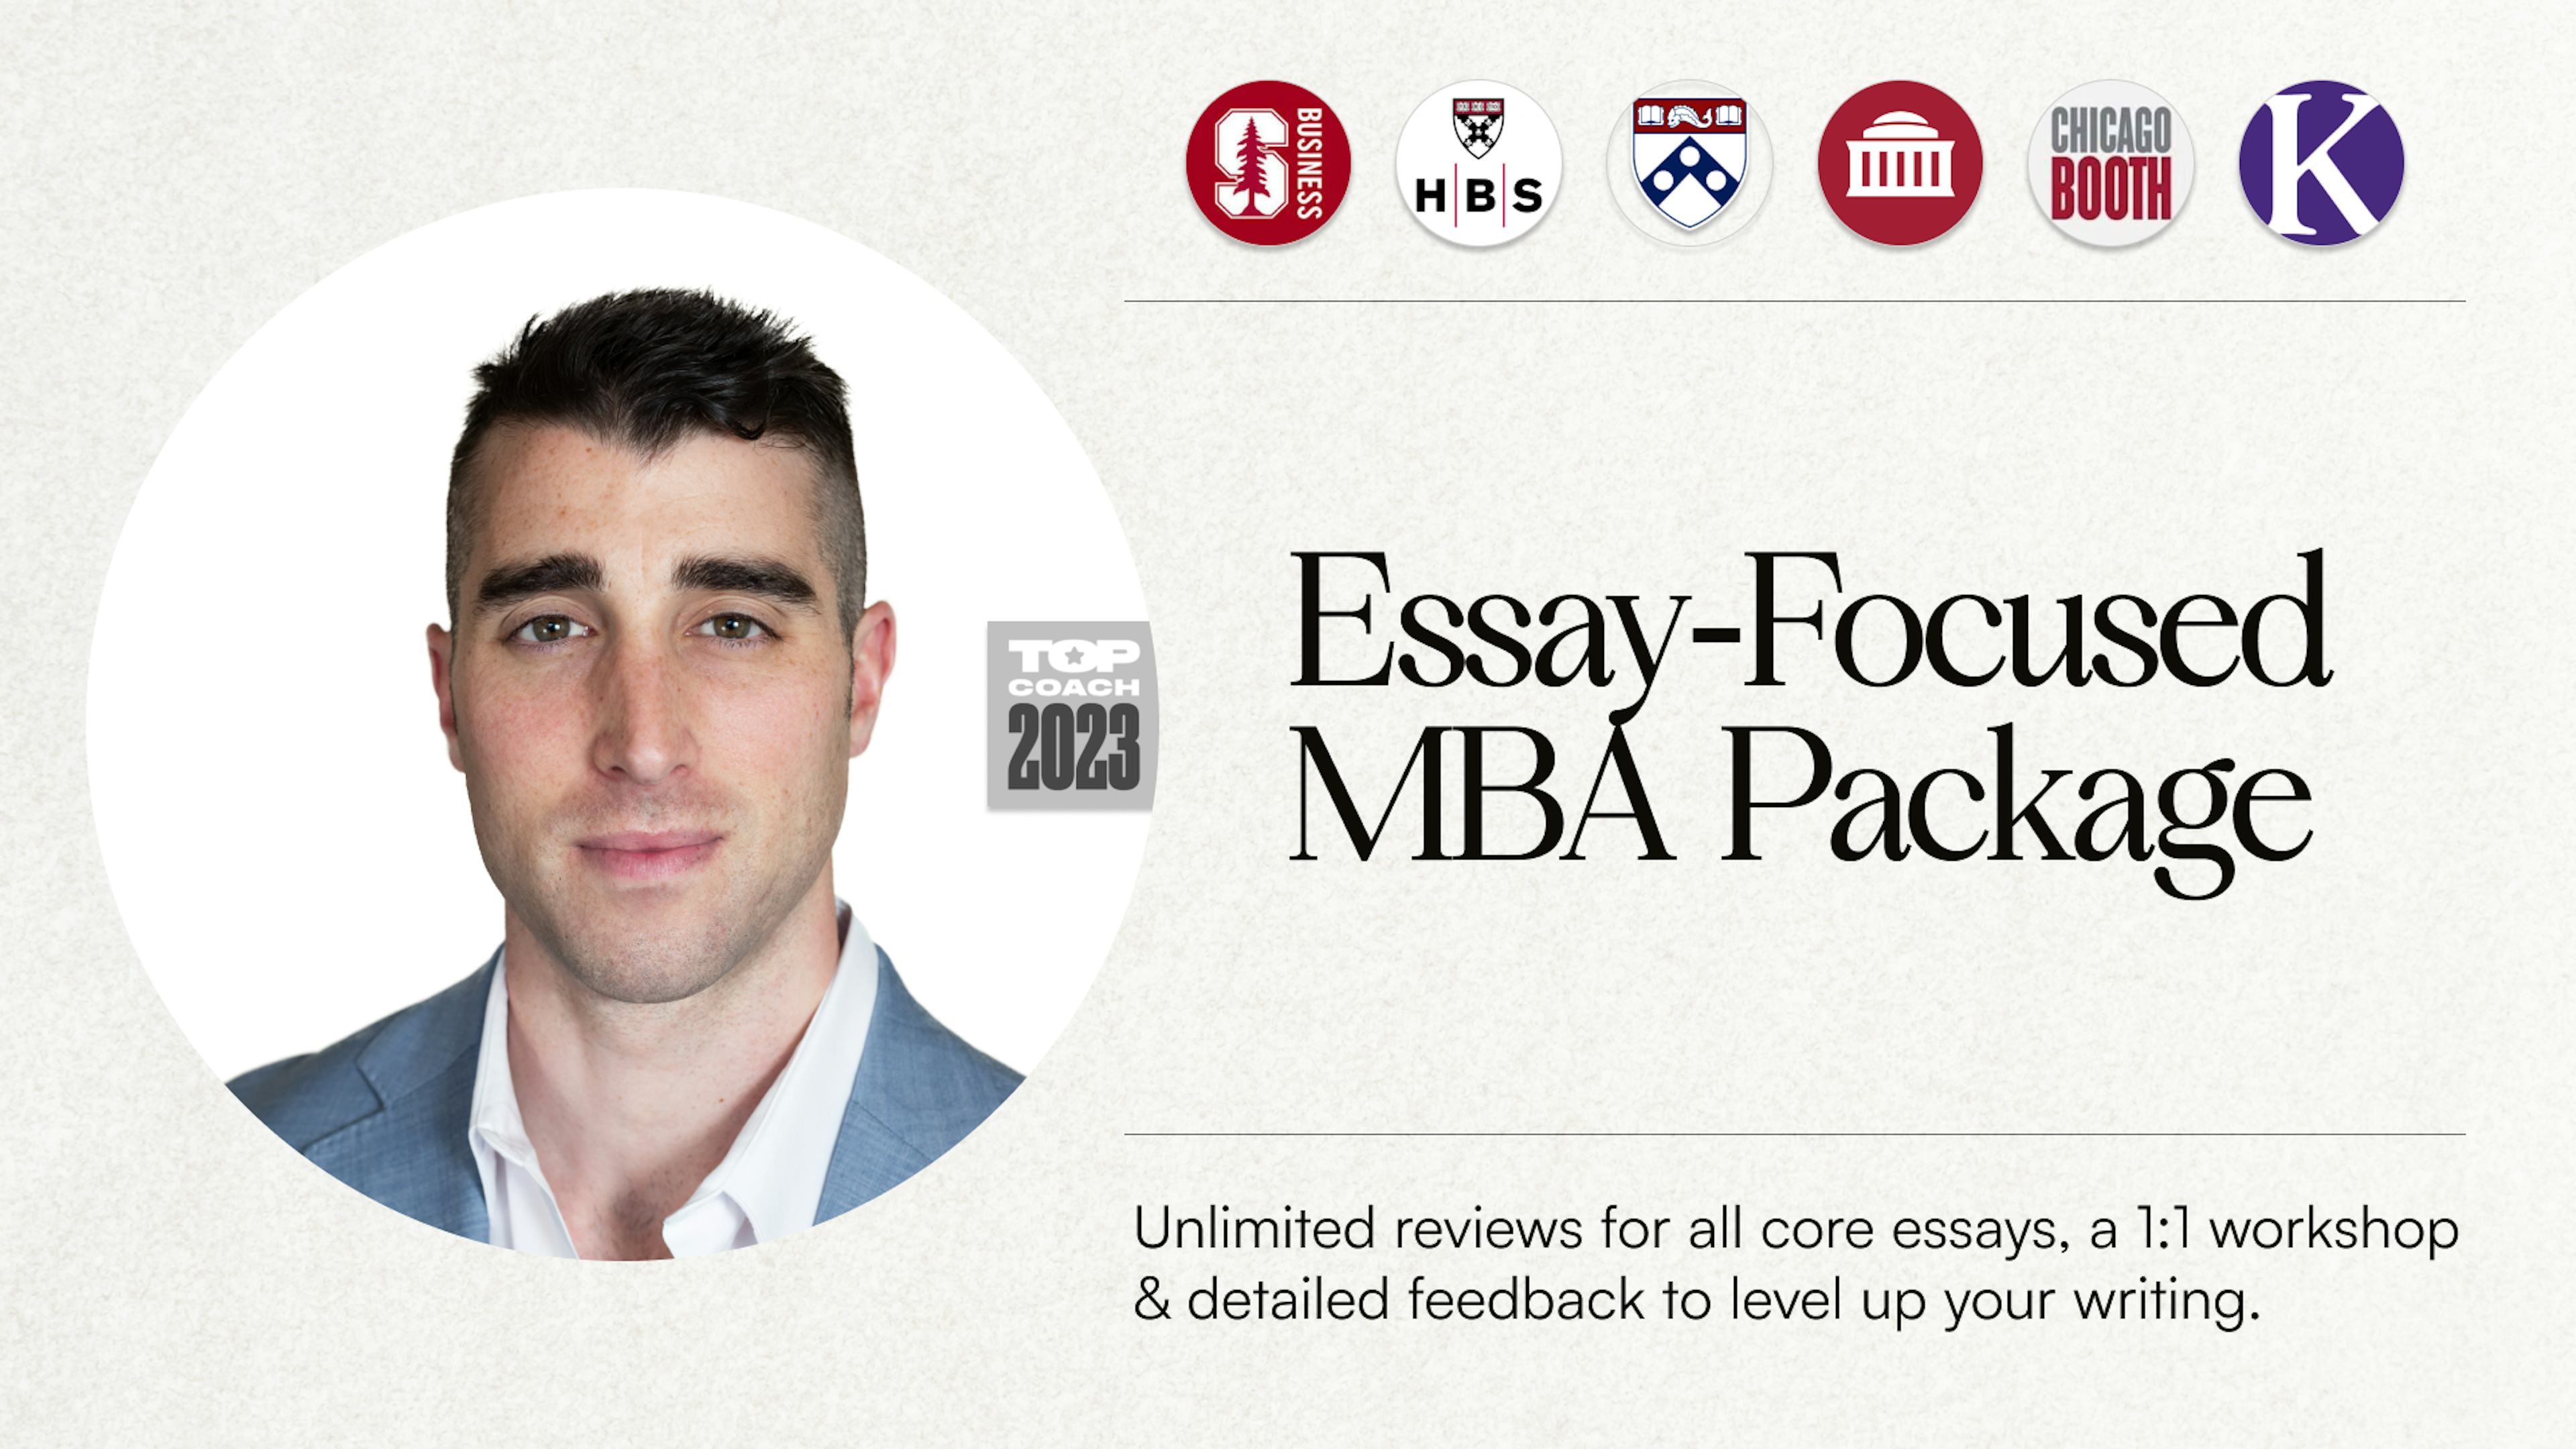 Essay-Focused MBA Package